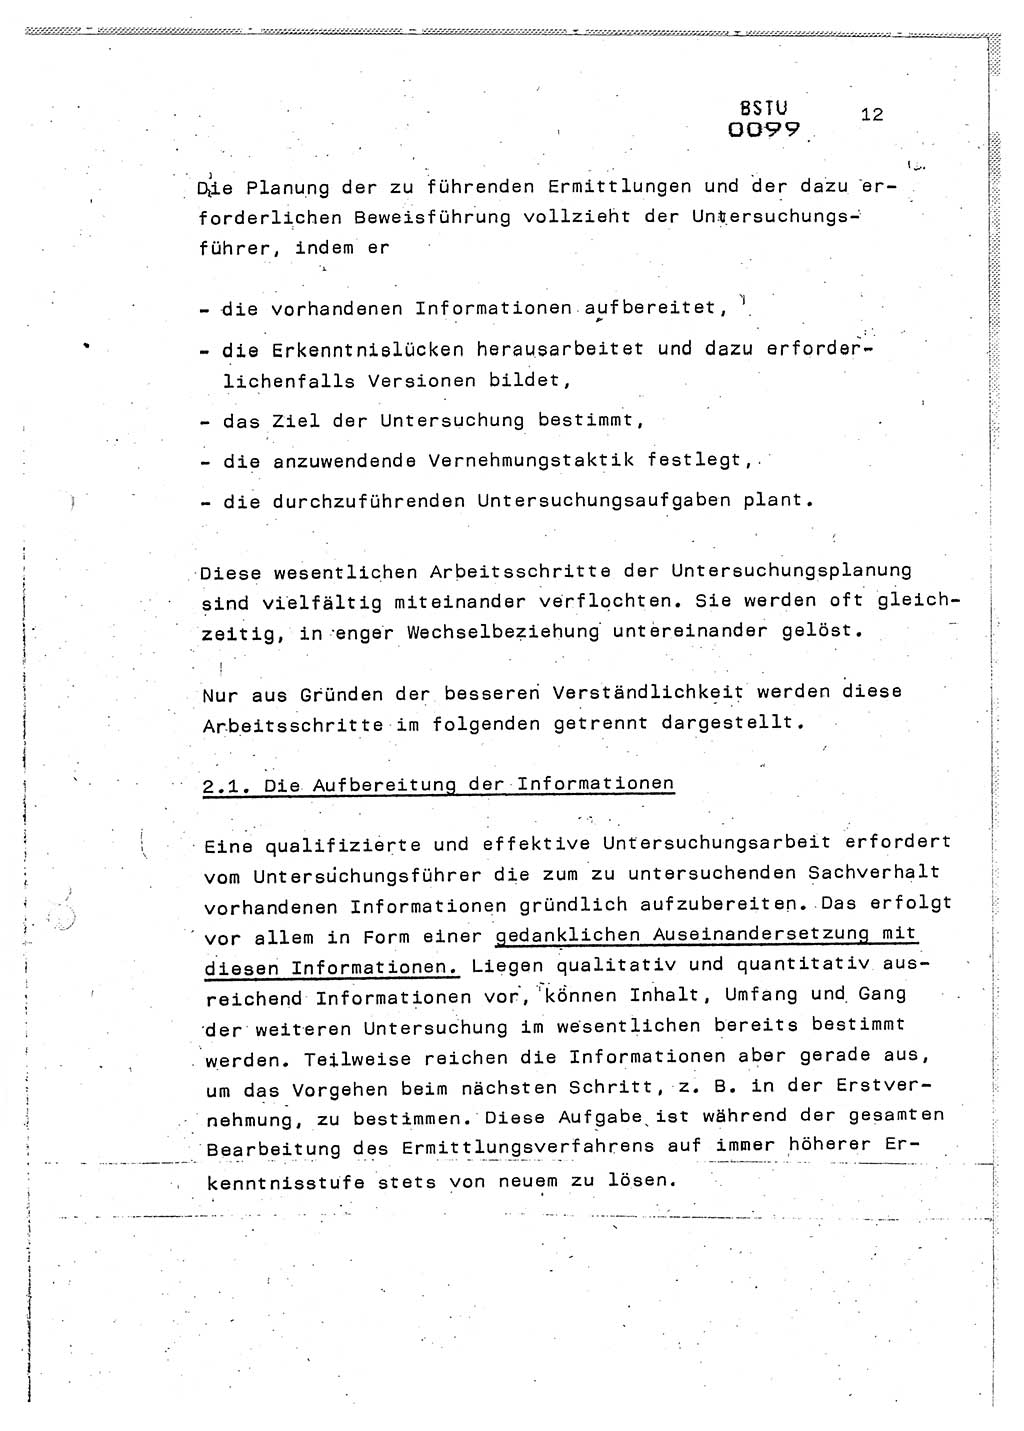 Lektion Ministerium für Staatssicherheit (MfS) [Deutsche Demokratische Republik (DDR)], Hauptabteilung (HA) Ⅸ, Berlin 1987, Seite 12 (Lekt. Pln. Bearb. EV MfS DDR HA Ⅸ /87 1987, S. 12)